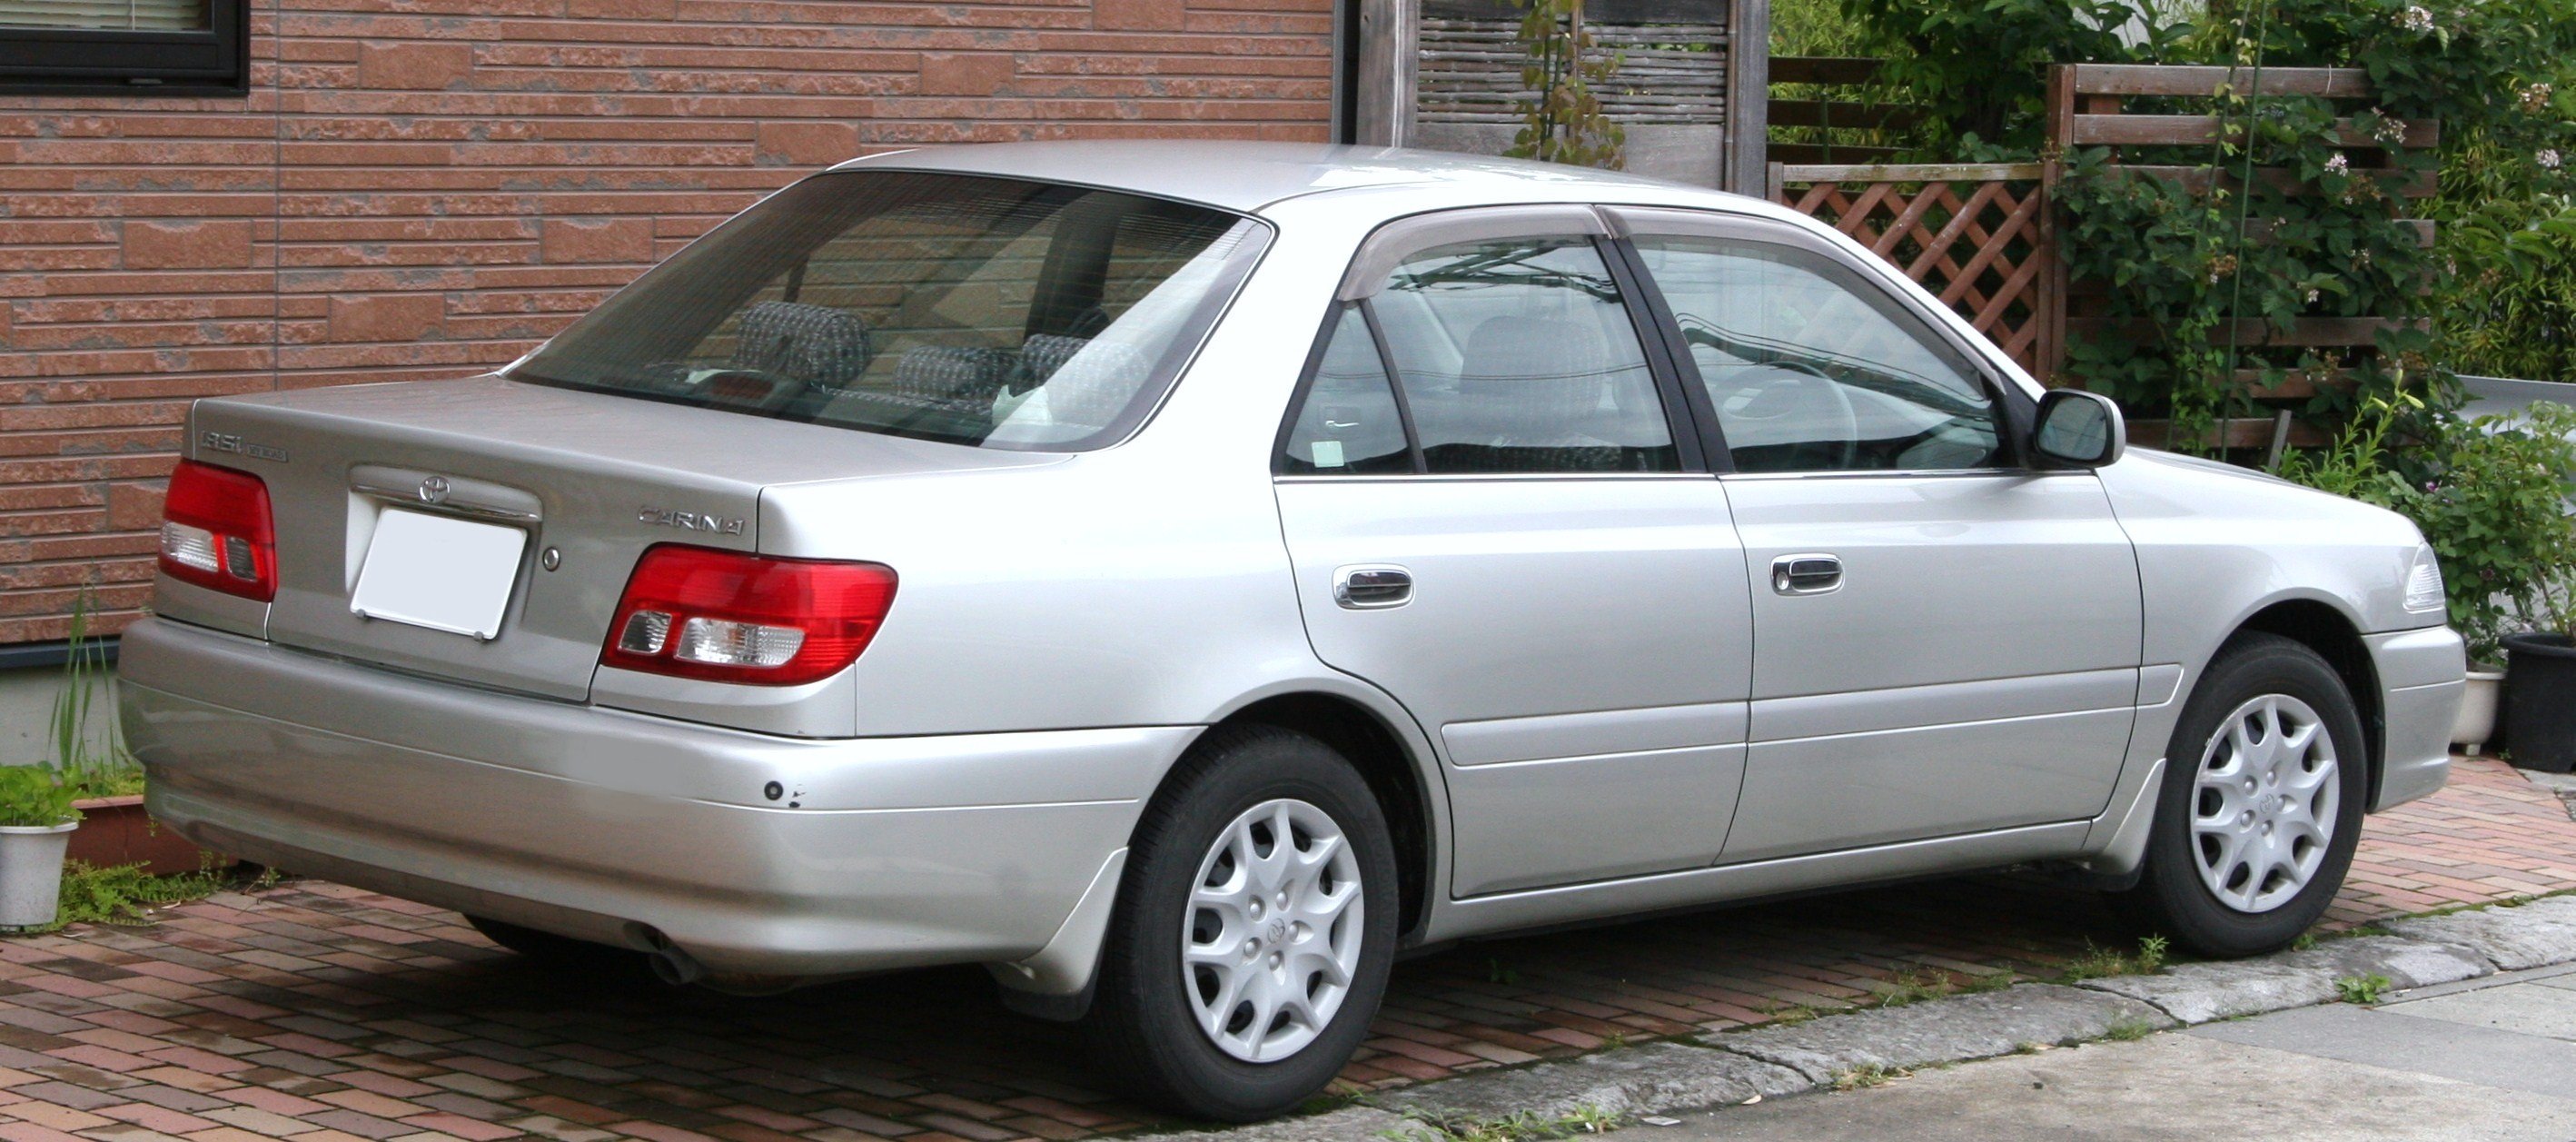 Toyota Carina exterior - Rear Left Angled